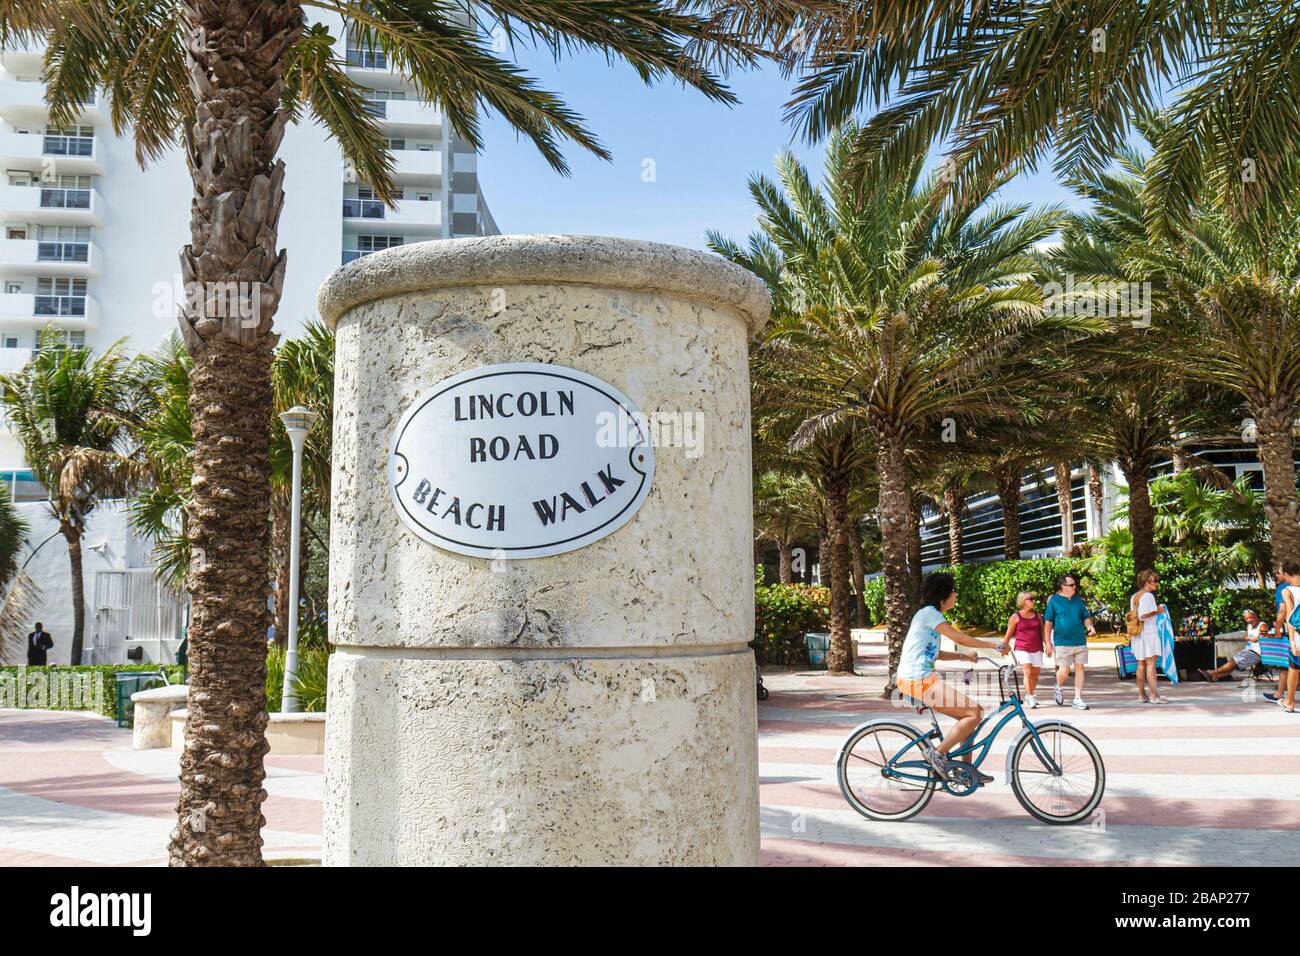 Miami Beach Florida, Beach Walk, Lincoln Road panneau poste, vélo vélos vélos vélos vélos, vélo vélo vélo équitation pilote exercice, vélo, vélo Banque D'Images